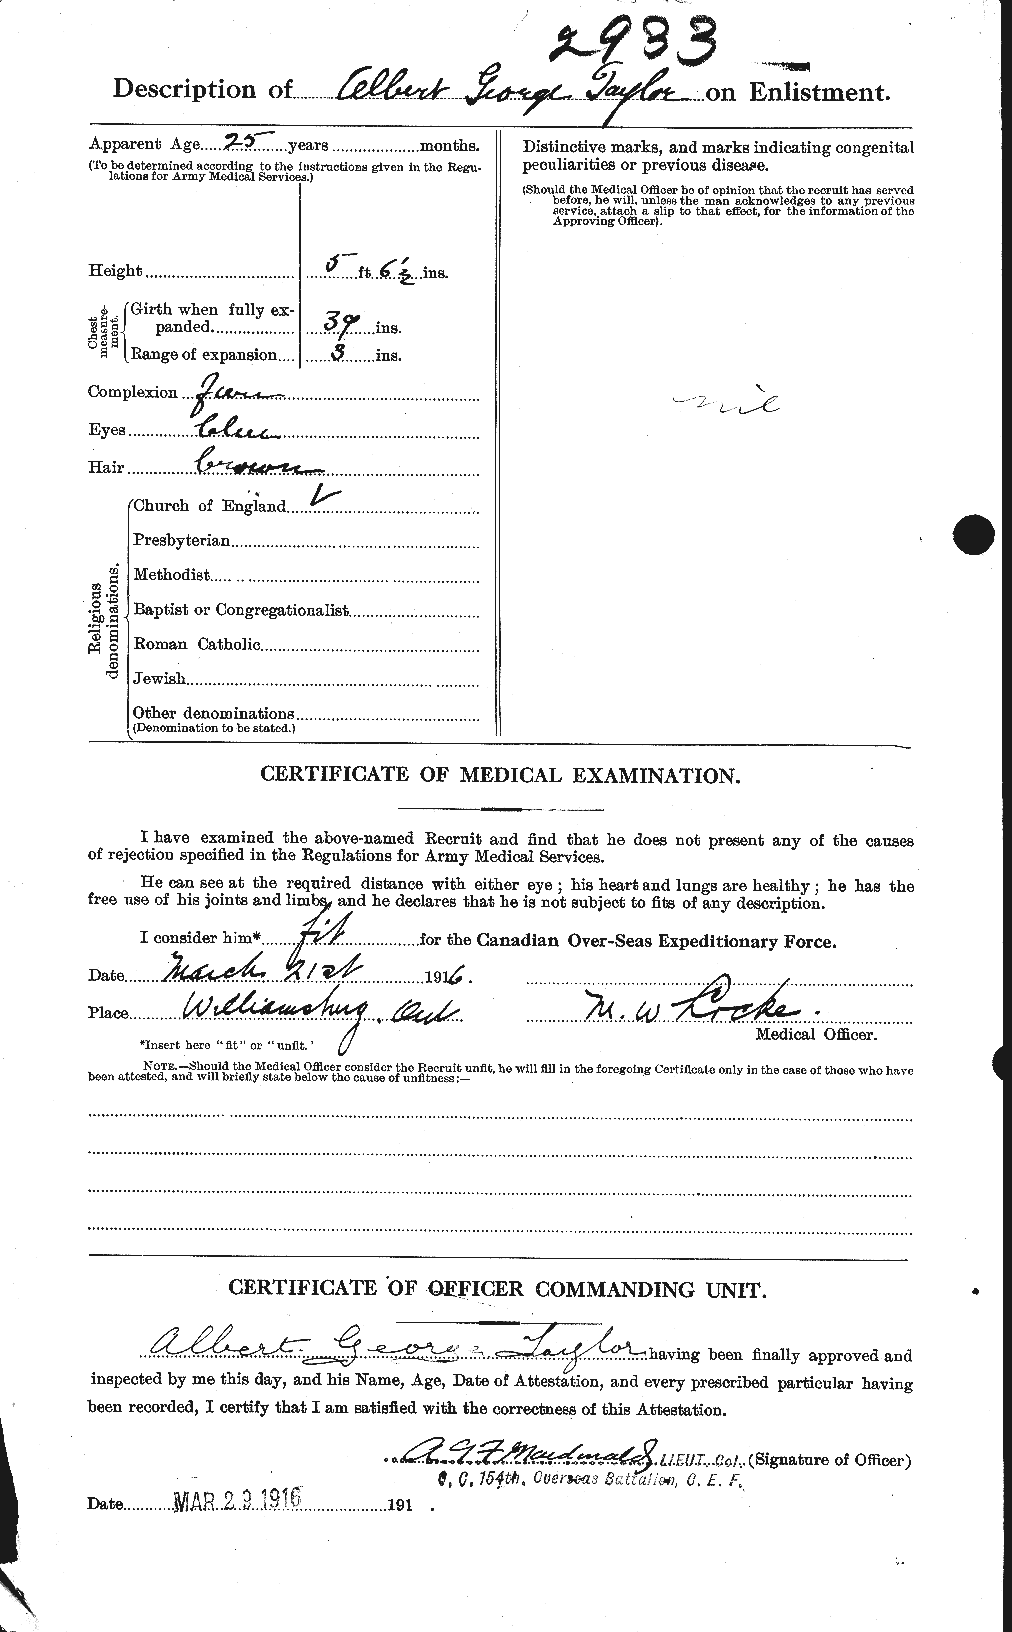 Dossiers du Personnel de la Première Guerre mondiale - CEC 626116b